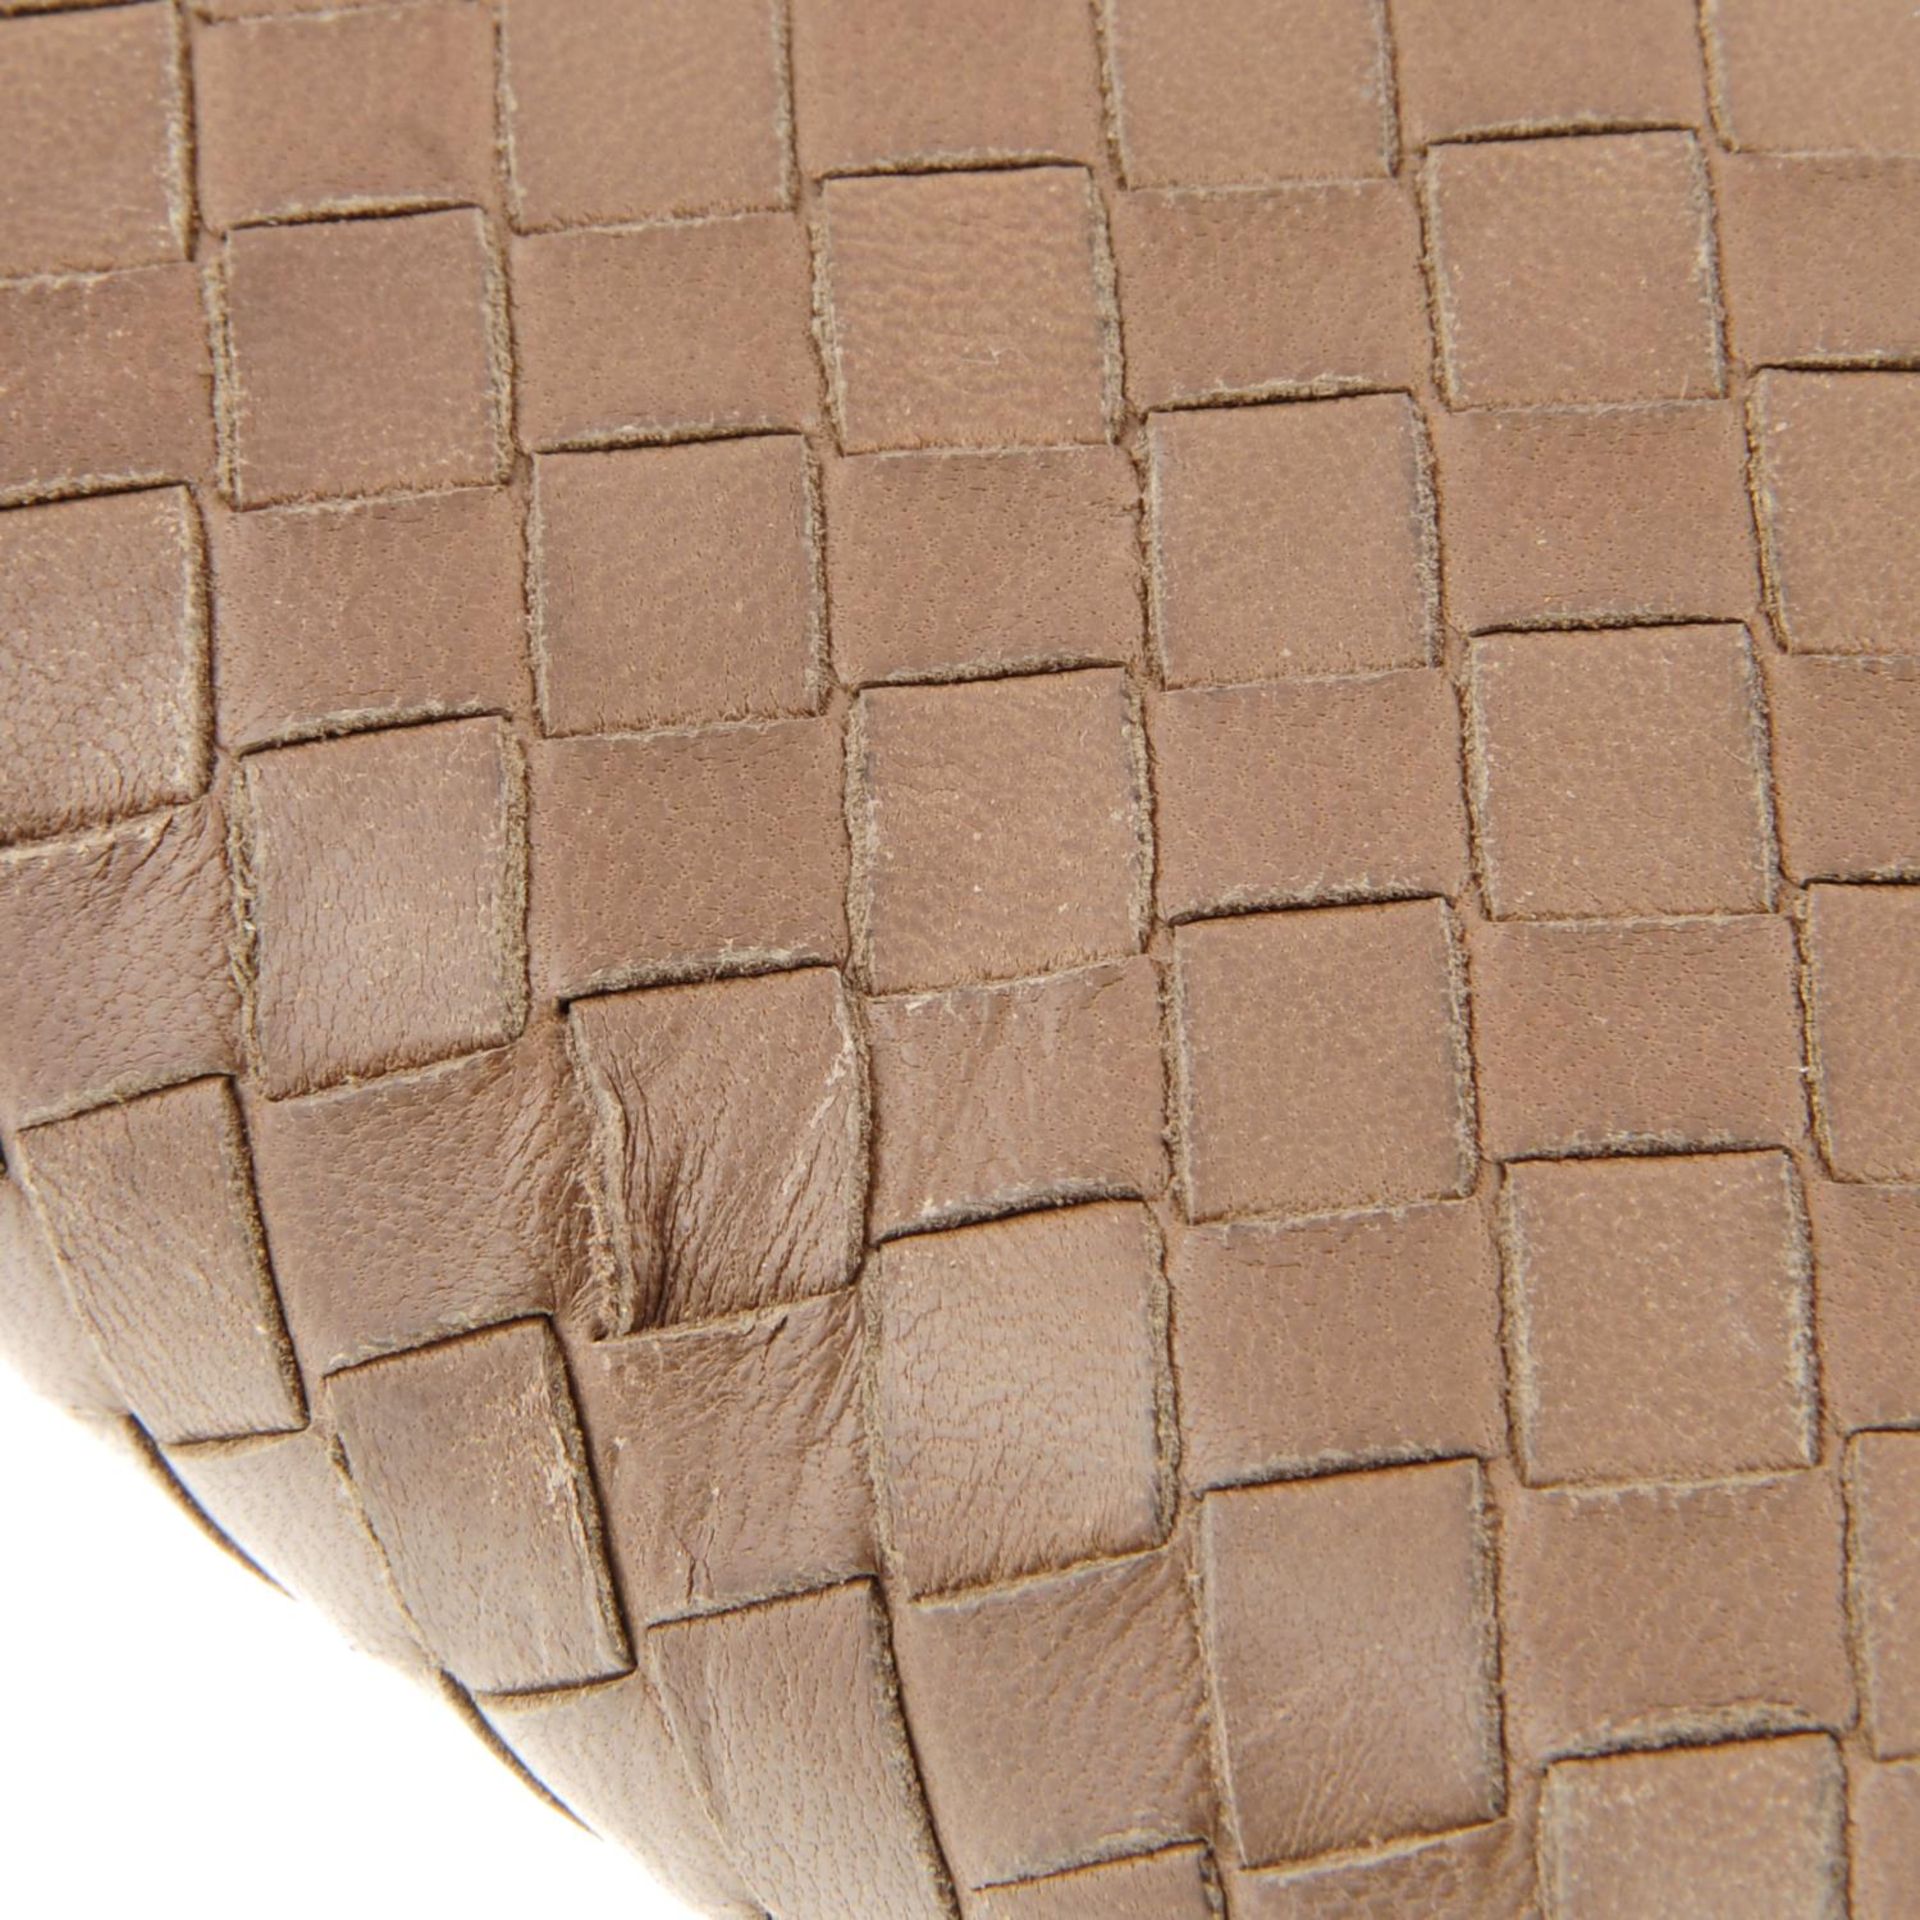 BOTTEGA VENETA - an Intrecciato leather Zippy wallet. - Image 4 of 4